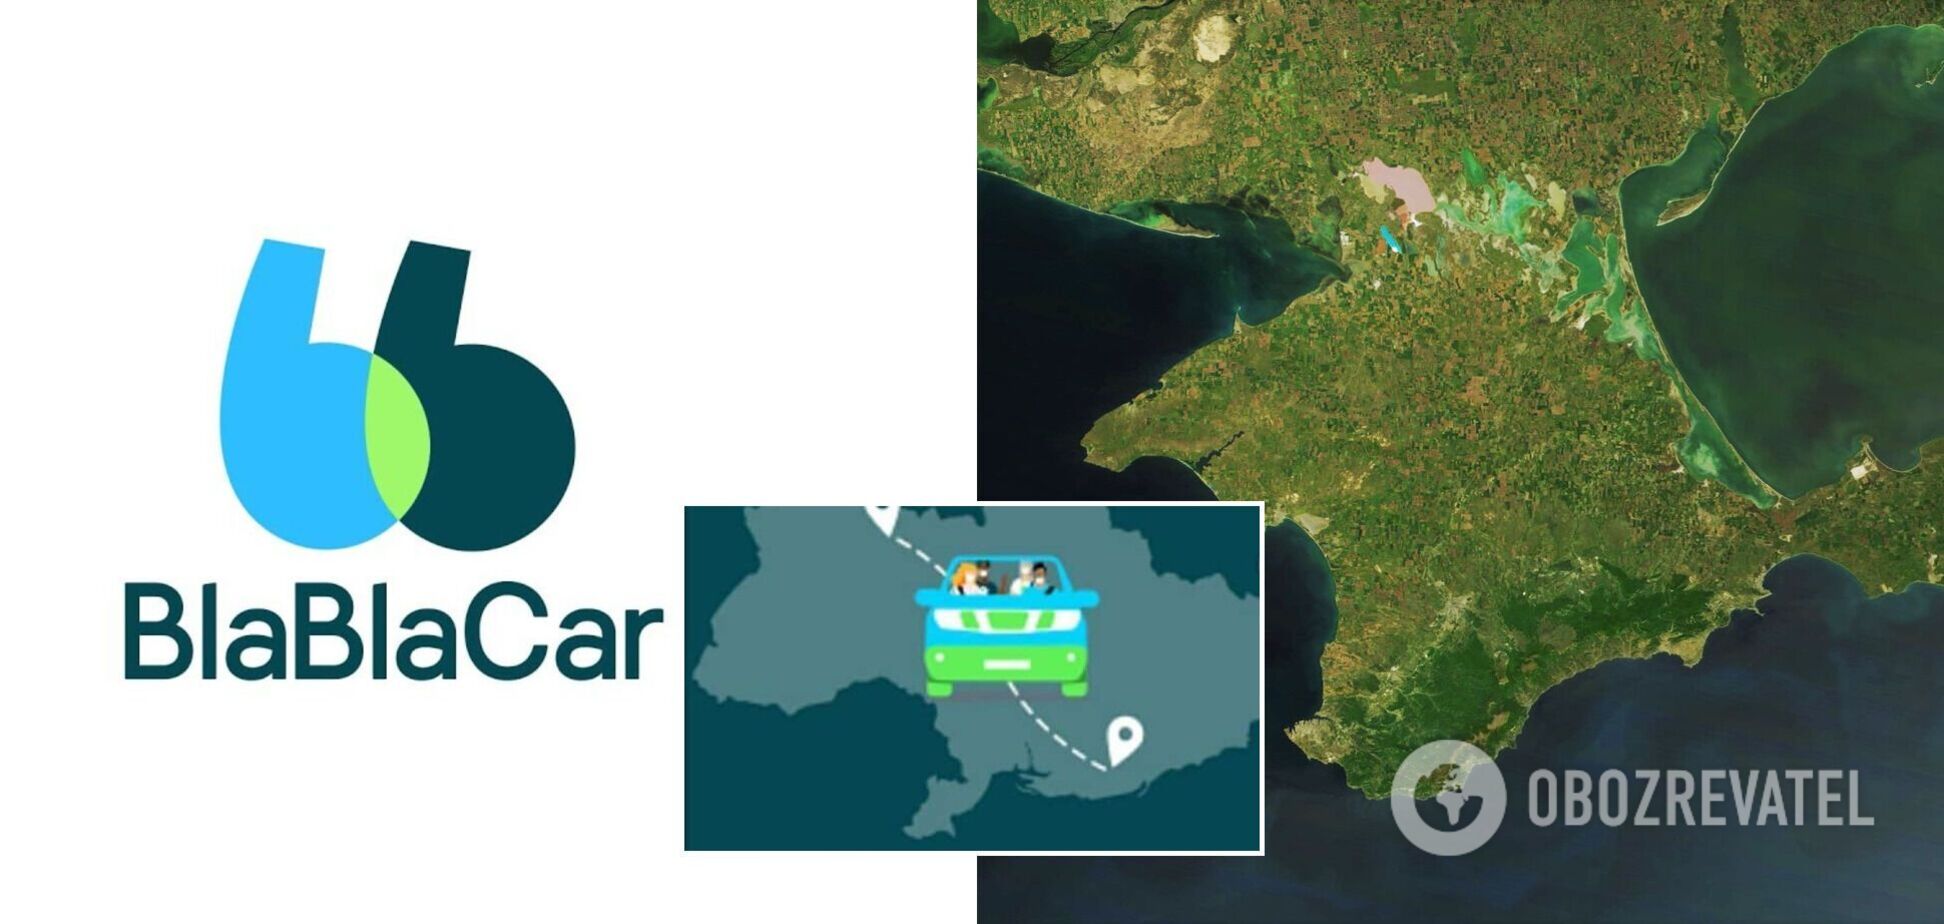 BlaBlaCar попал в скандал из-за рекламы с картой Украины без Крыма: в сети потребовали объяснений